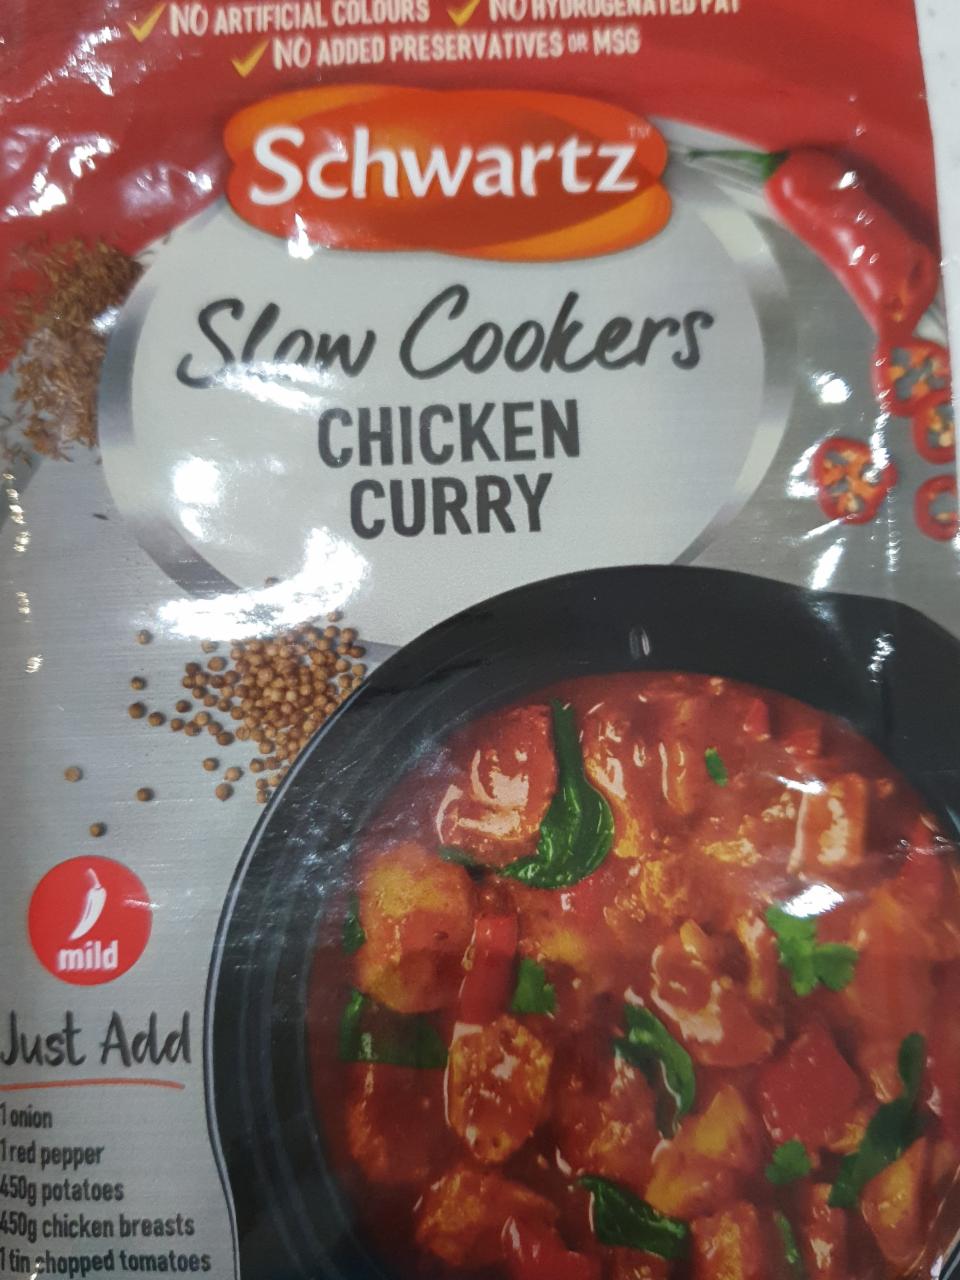 Fotografie - Slow Cookers Chicken Curry Schwartz